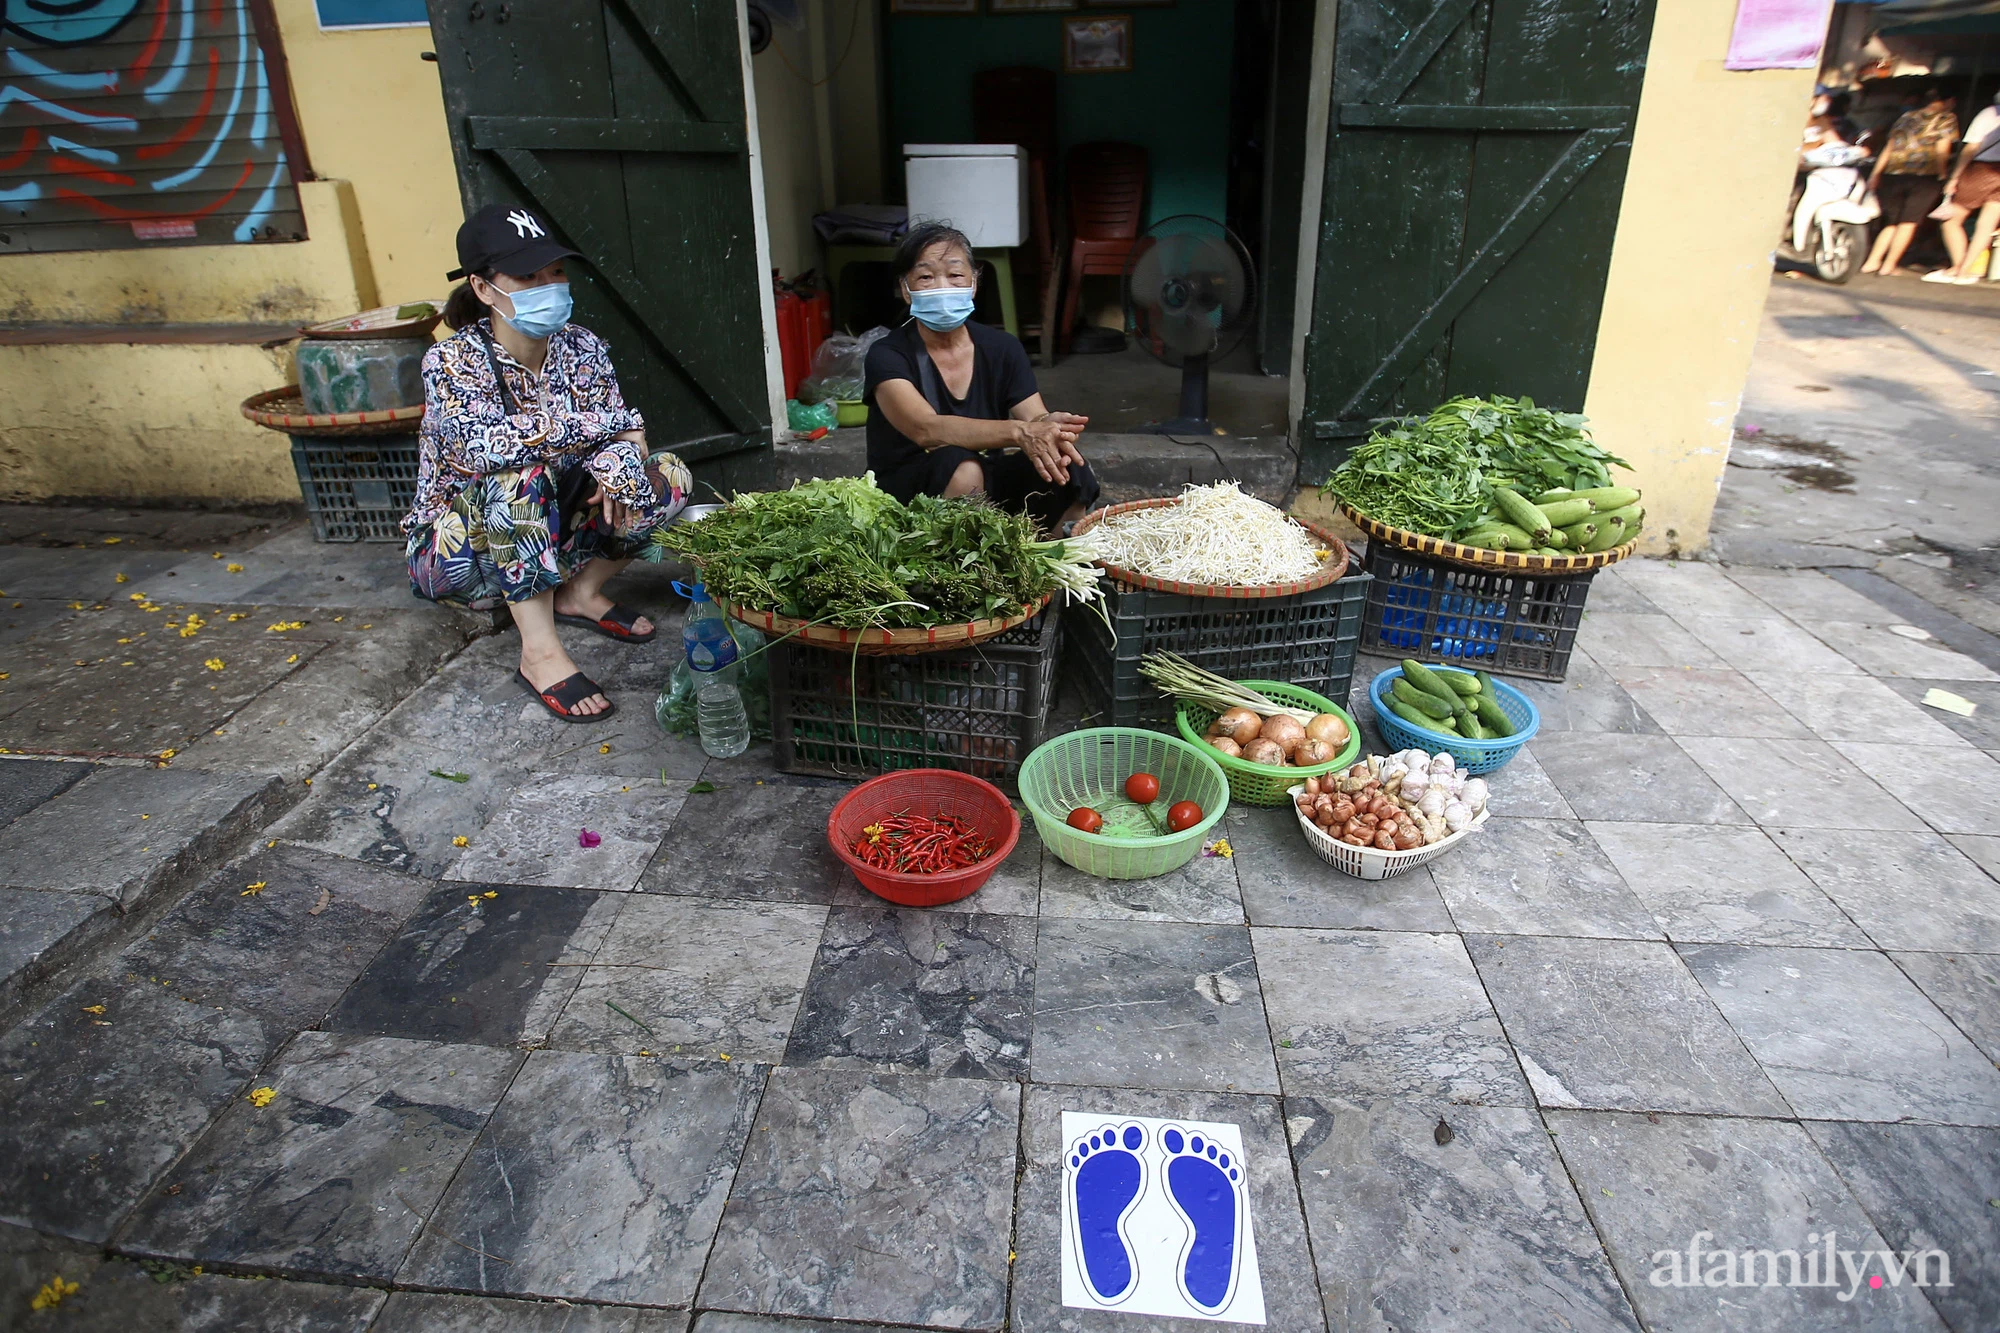 Ngày đầu giãn cách theo Chỉ thị 16, khu chợ ở Hà Nội kẻ vạch cách nhau 2 m, người mua kẻ bán tuy xa mặt nhưng không cách lòng - Ảnh 11.